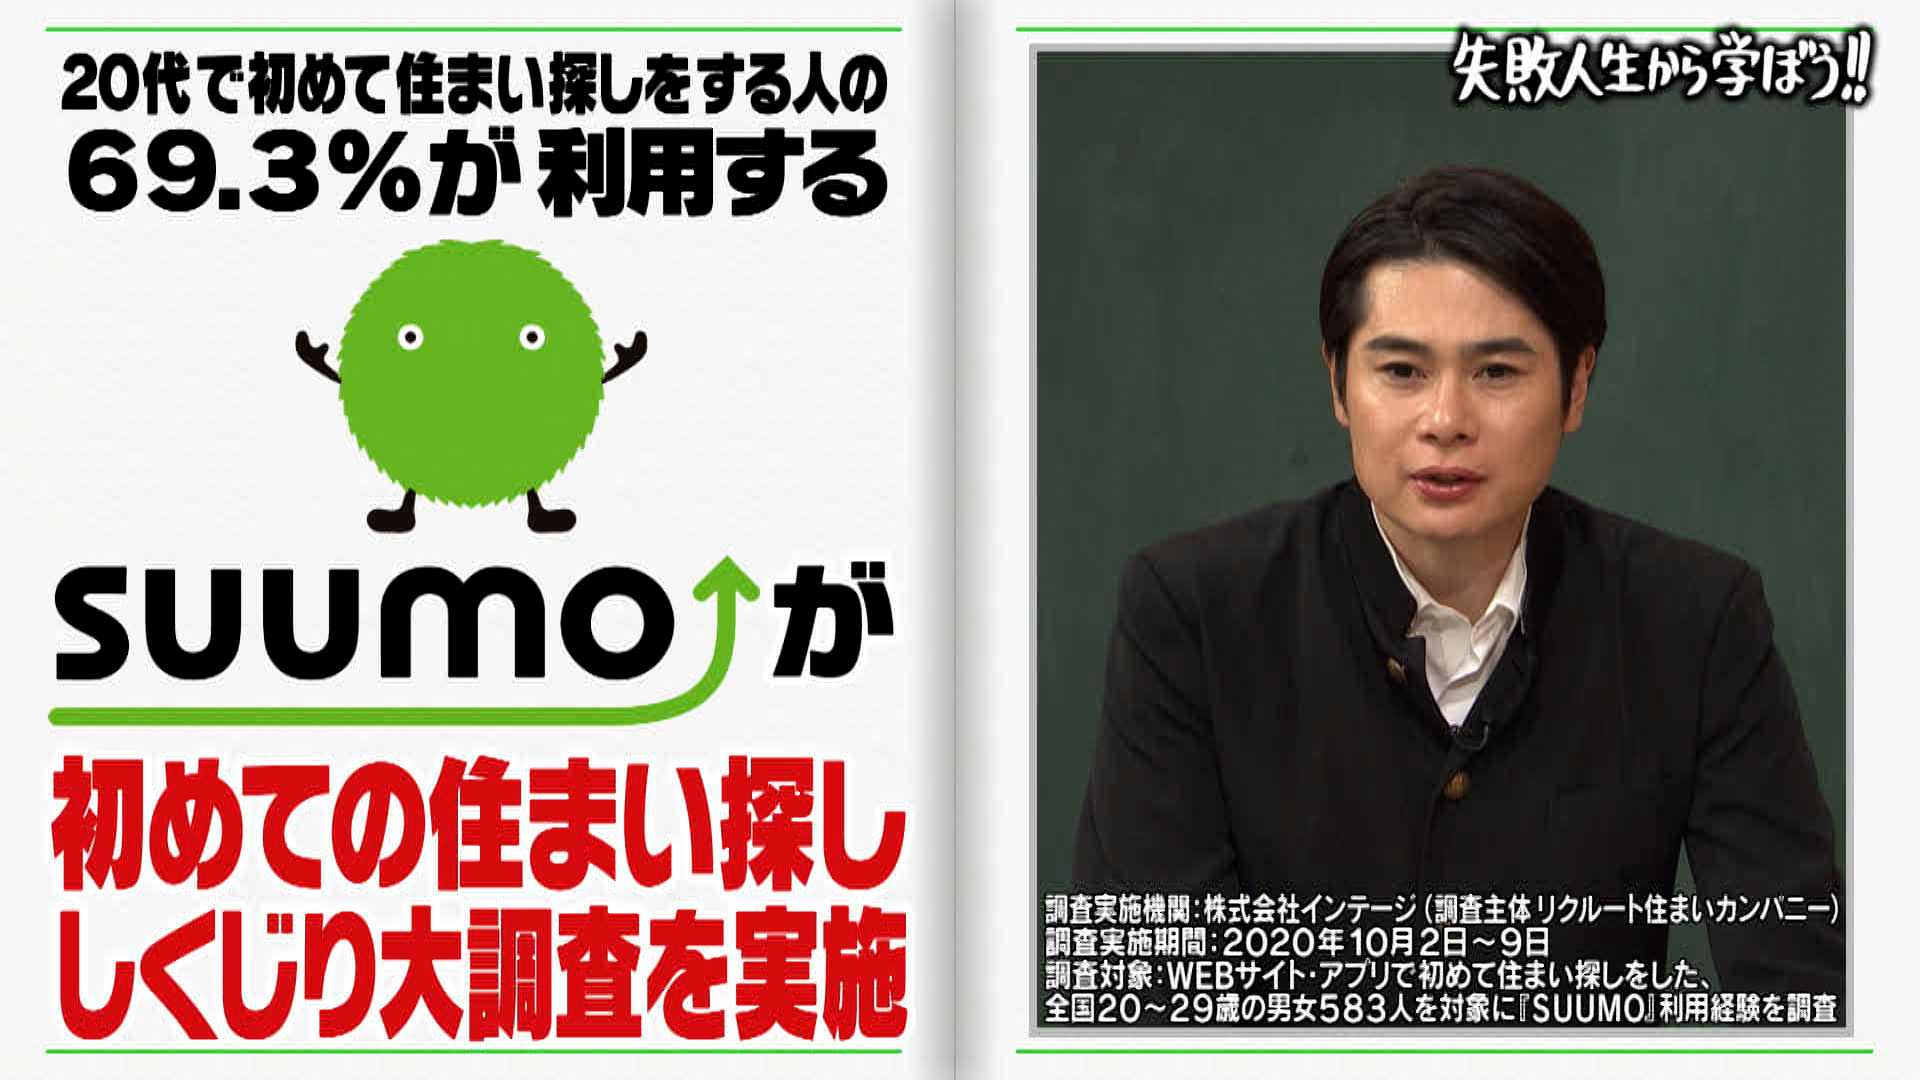 不動産 住宅情報サイト Suumo スーモ がテレビ朝日の人気番組 しくじり先生 と初タイアップ 株式会社リクルート住まいカンパニーのプレスリリース